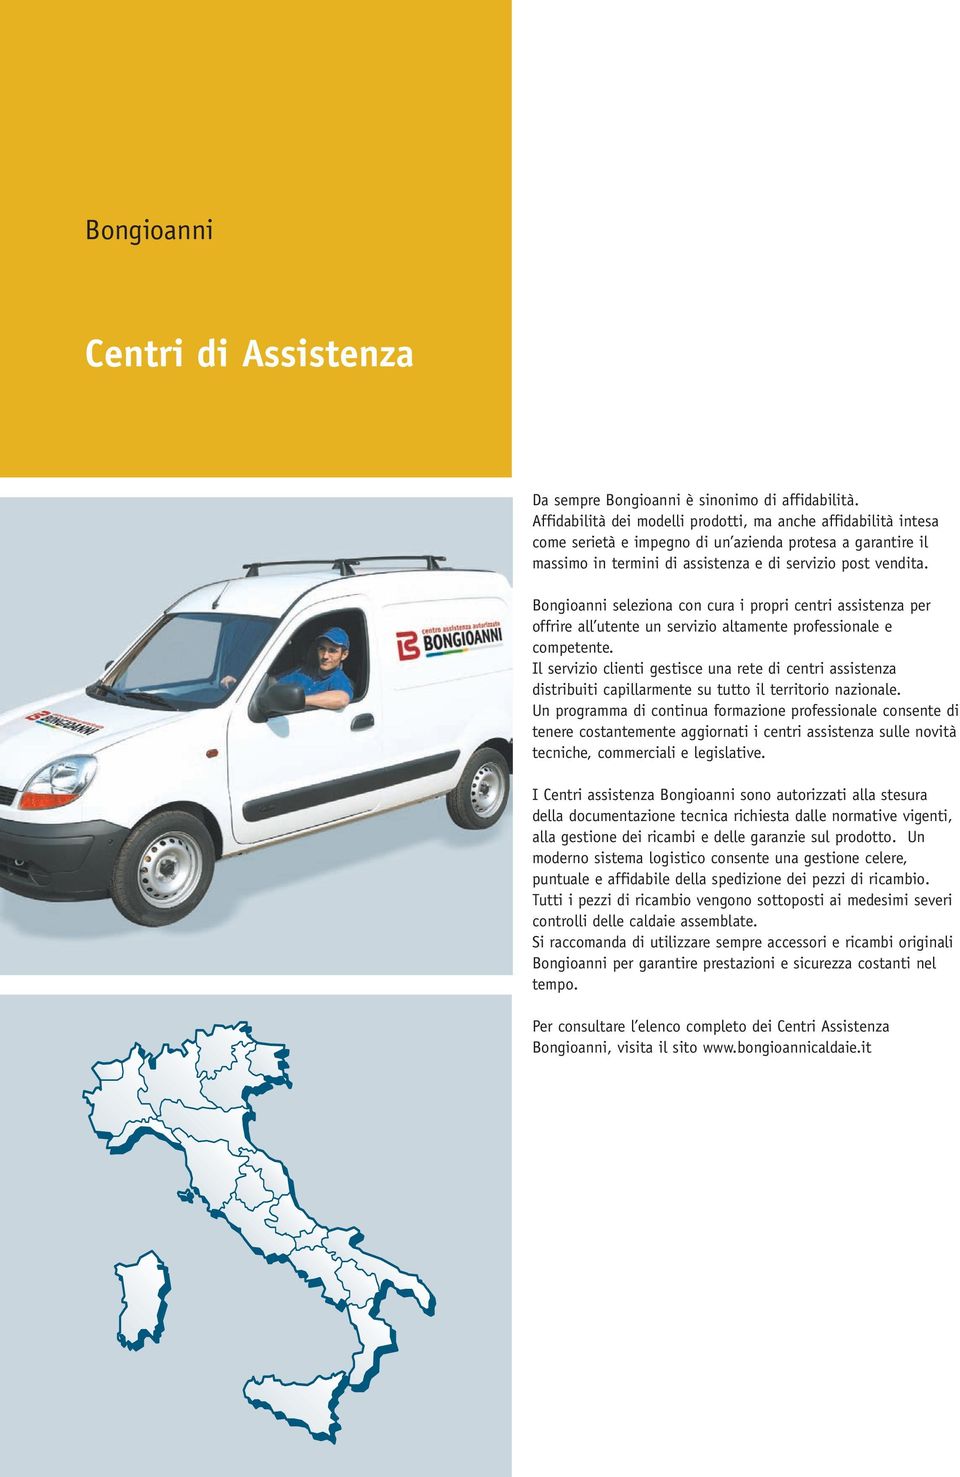 Bongioanni seleziona con cura i propri centri assistenza per offrire all utente un servizio altamente professionale e competente.